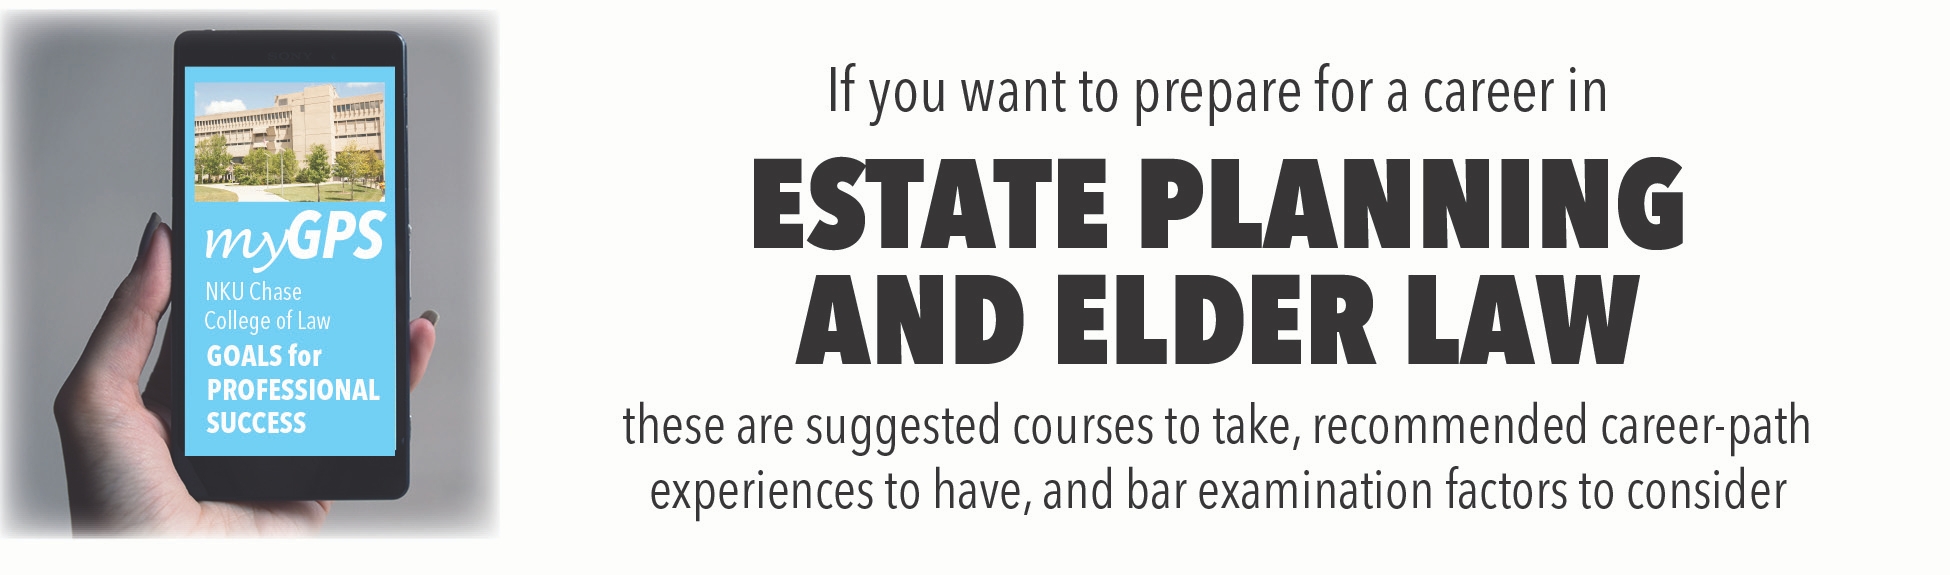 Estate Planning and Elder Law